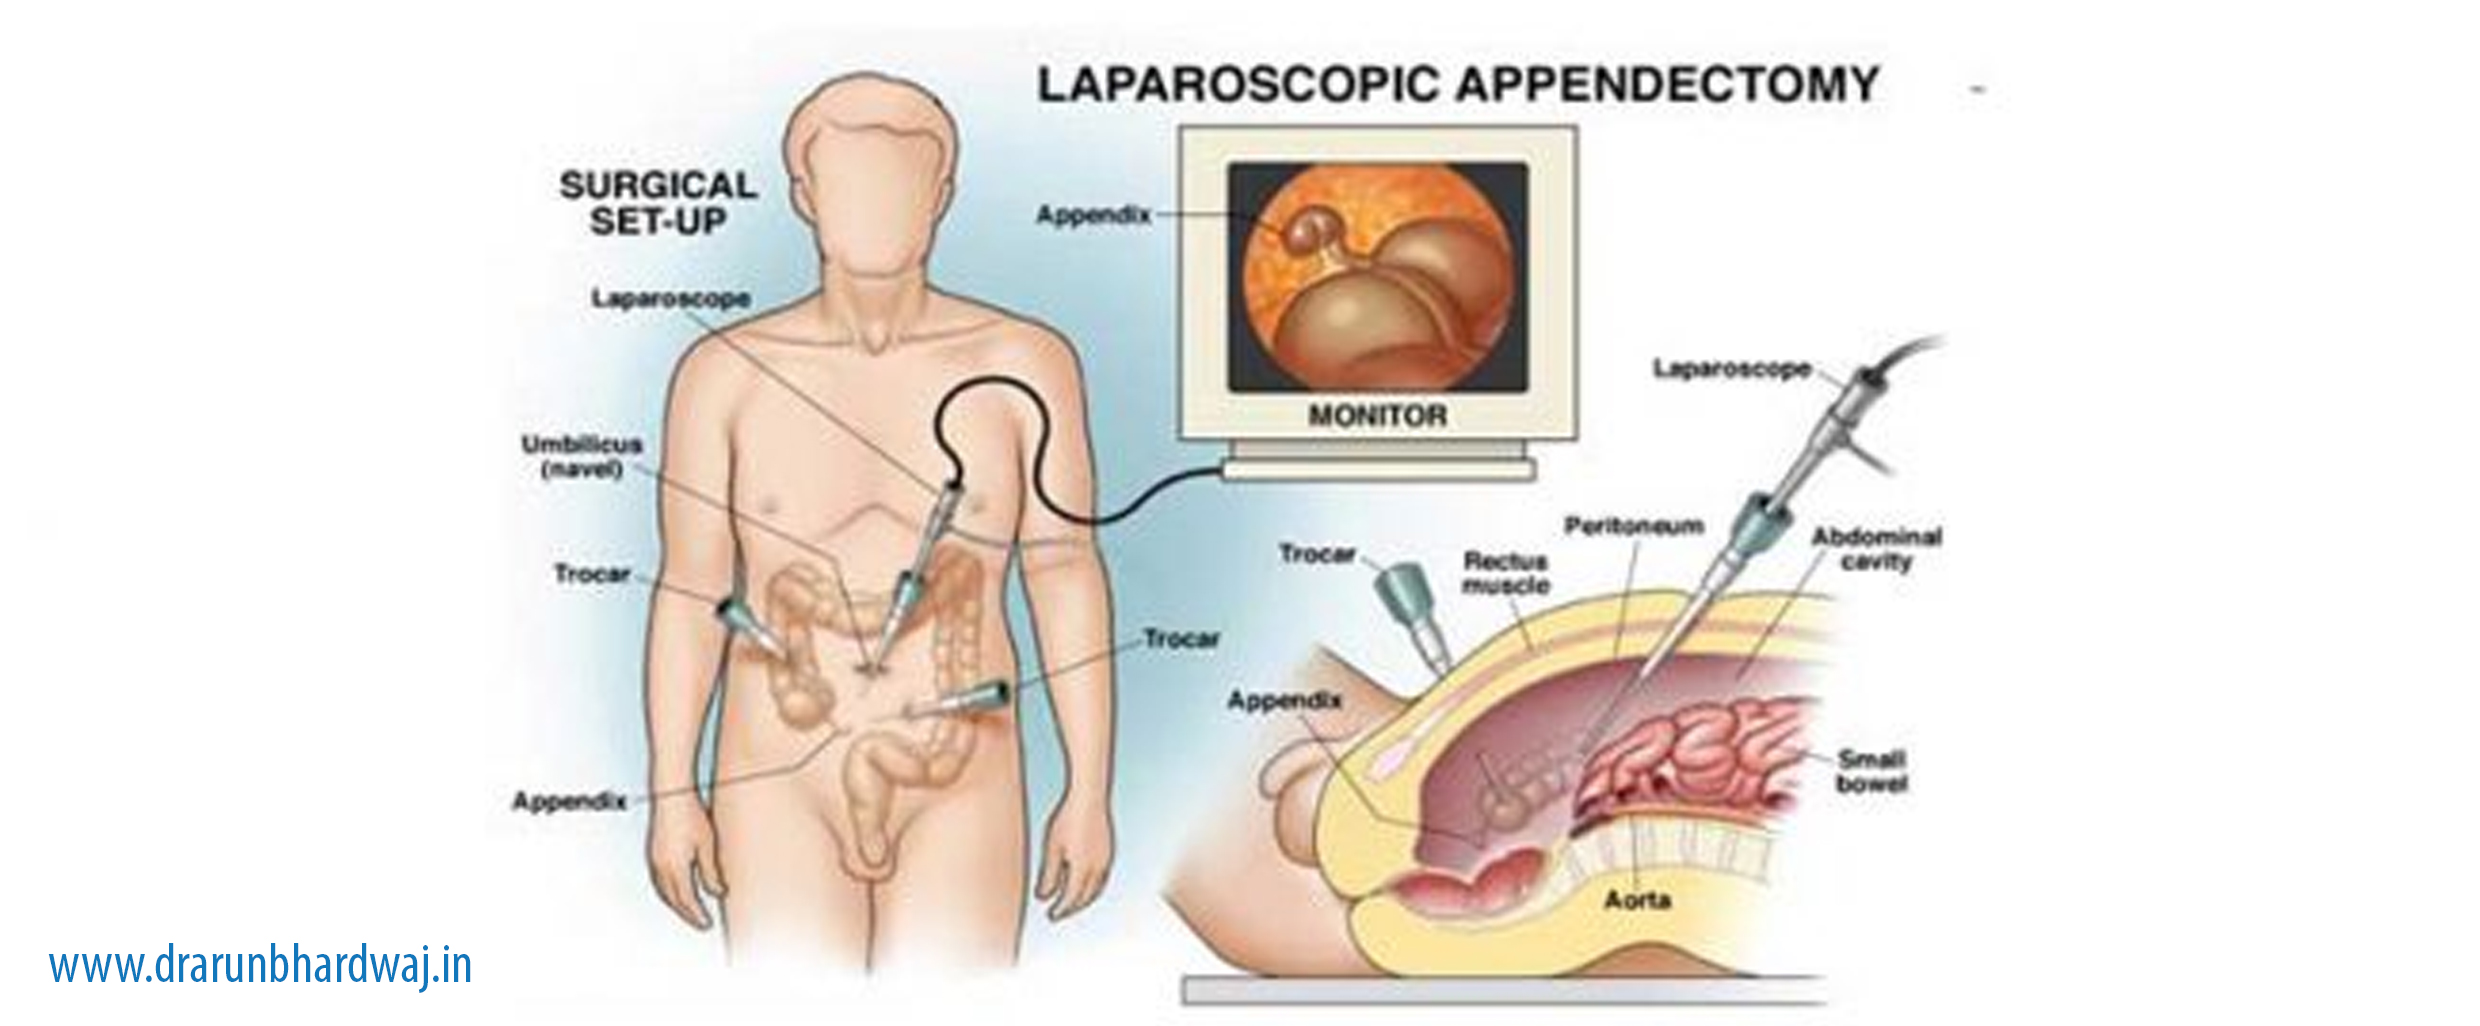 LAPAROSCOPIC APPENDECTOMY /APPENDICITIS